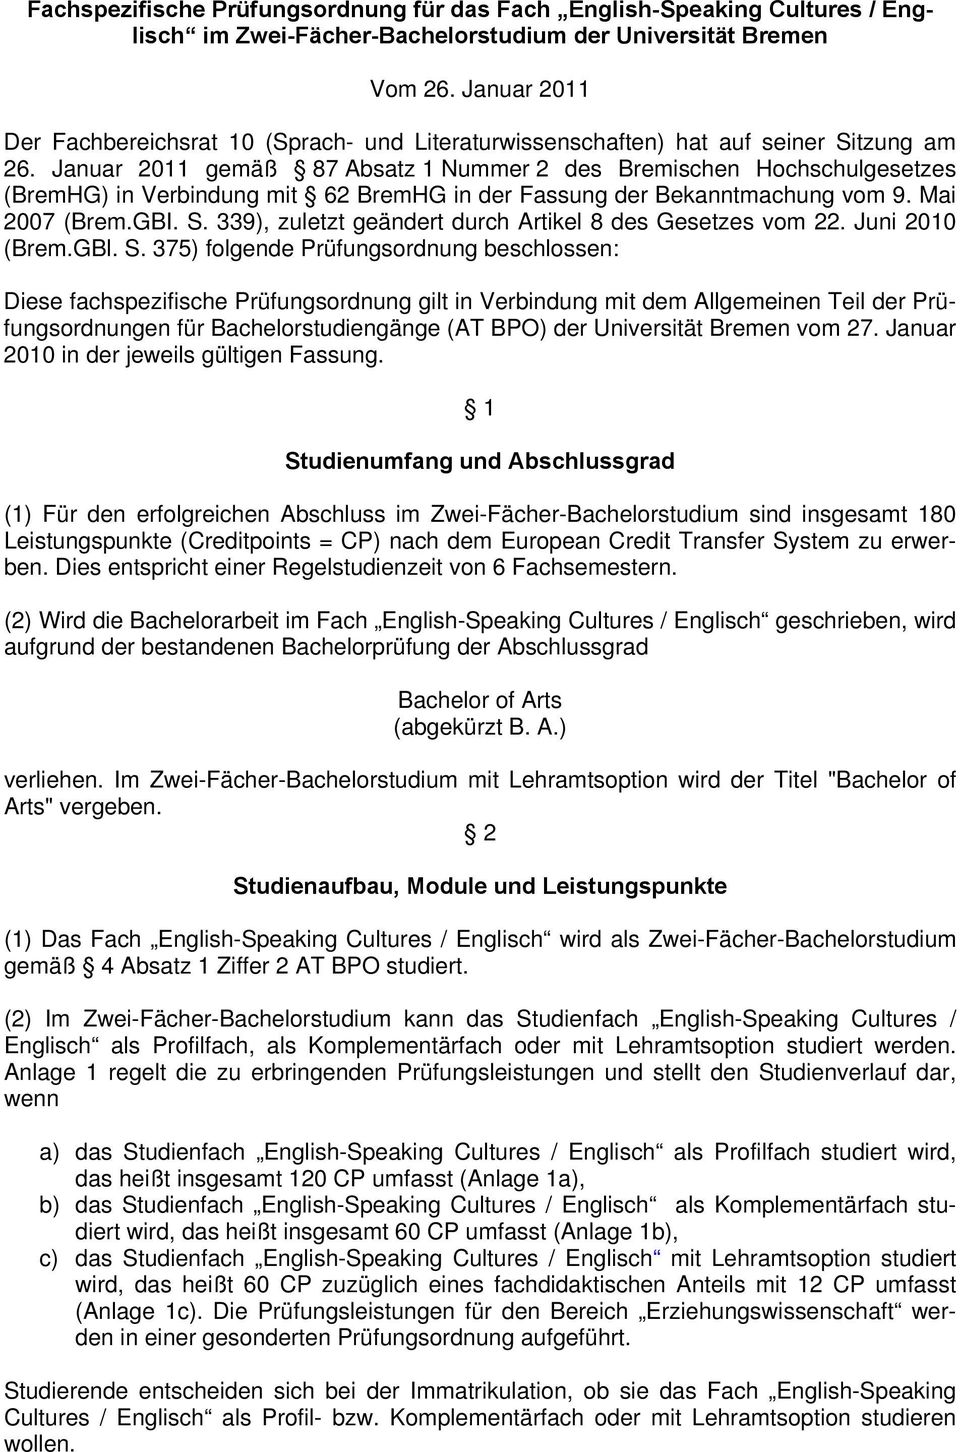 Januar 2011 gemäß 87 Absatz 1 Nummer 2 des Bremischen Hochschulgesetzes (BremHG) in Verbindung mit 62 BremHG in der Fassung der Bekanntmachung vom 9. Mai 2007 (Brem.GBI. S.